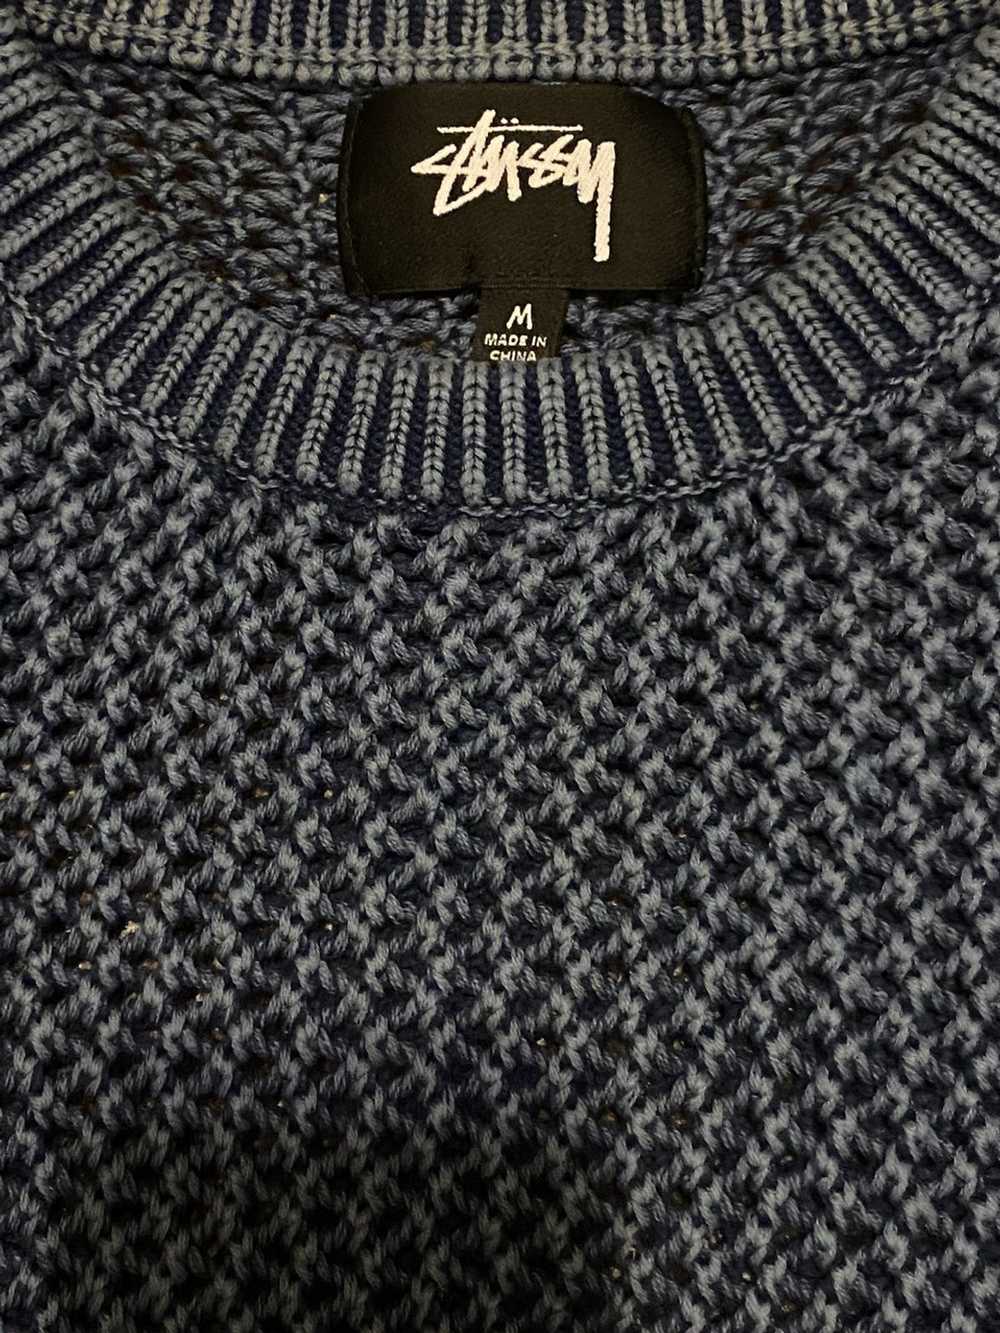 Stussy Stussy Loose Gauge Overdyed Knit Sweater - image 3